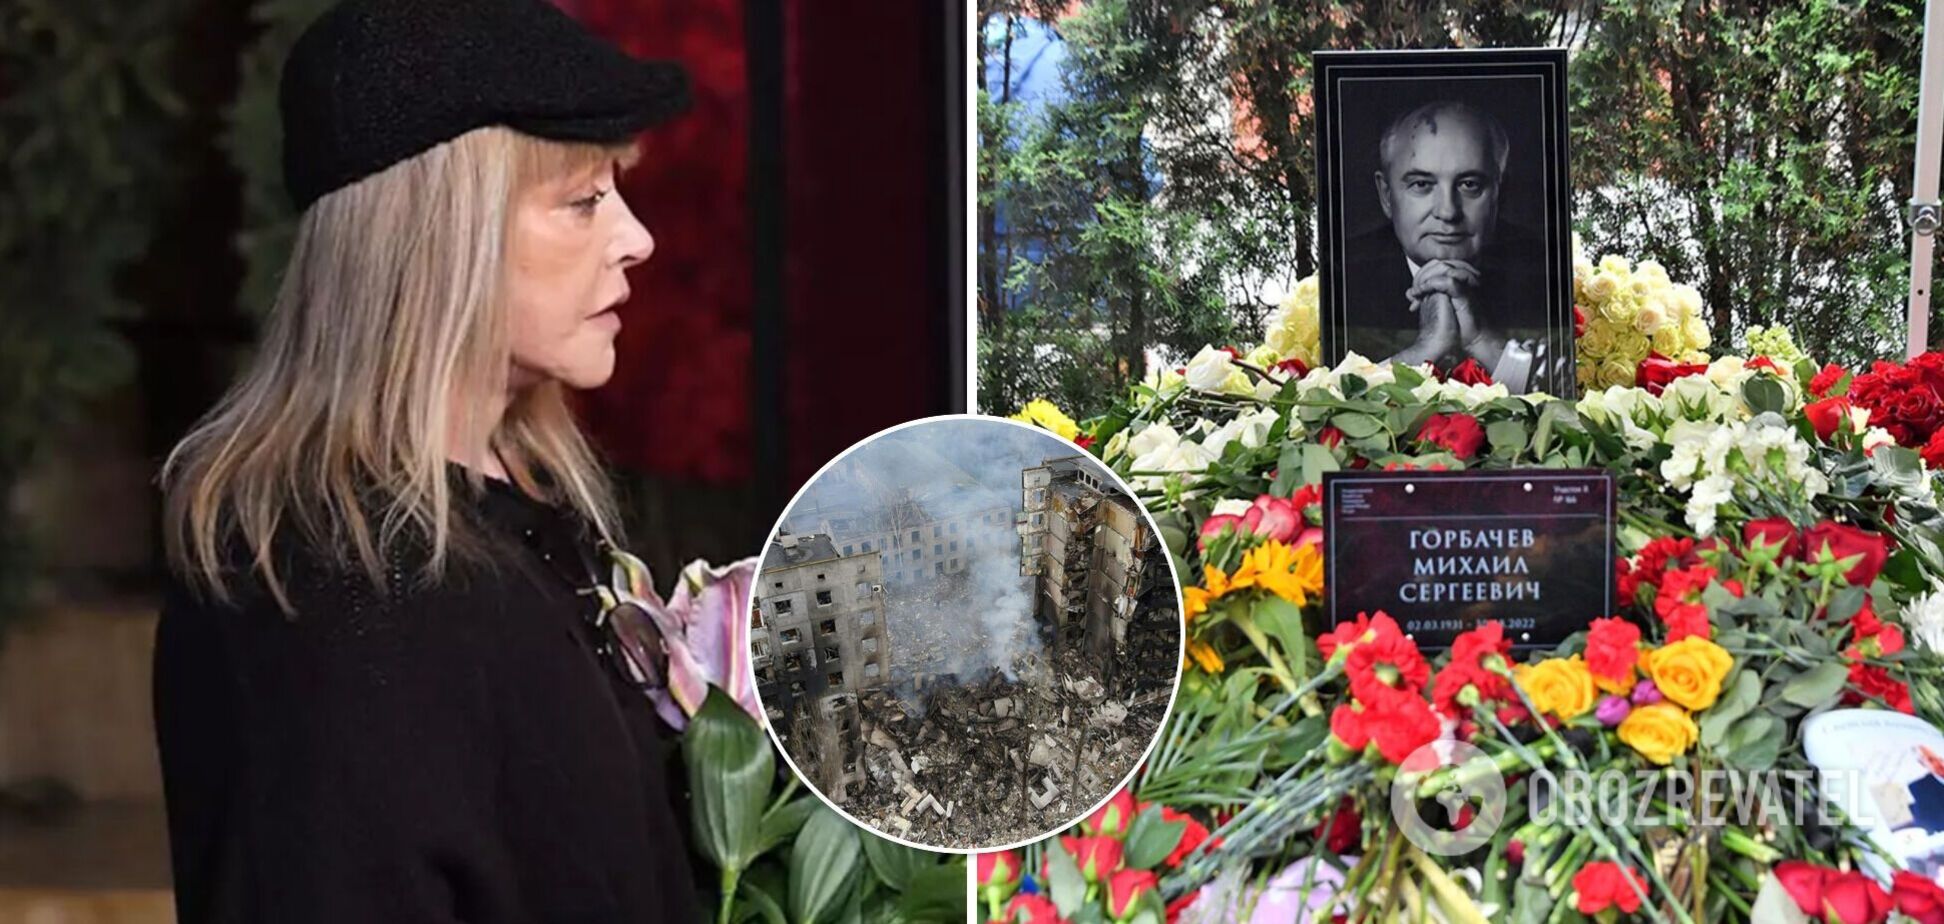 'Я давно так не рыдала': Пугачева после похорон Горбачева намекнула, что осуждает войну